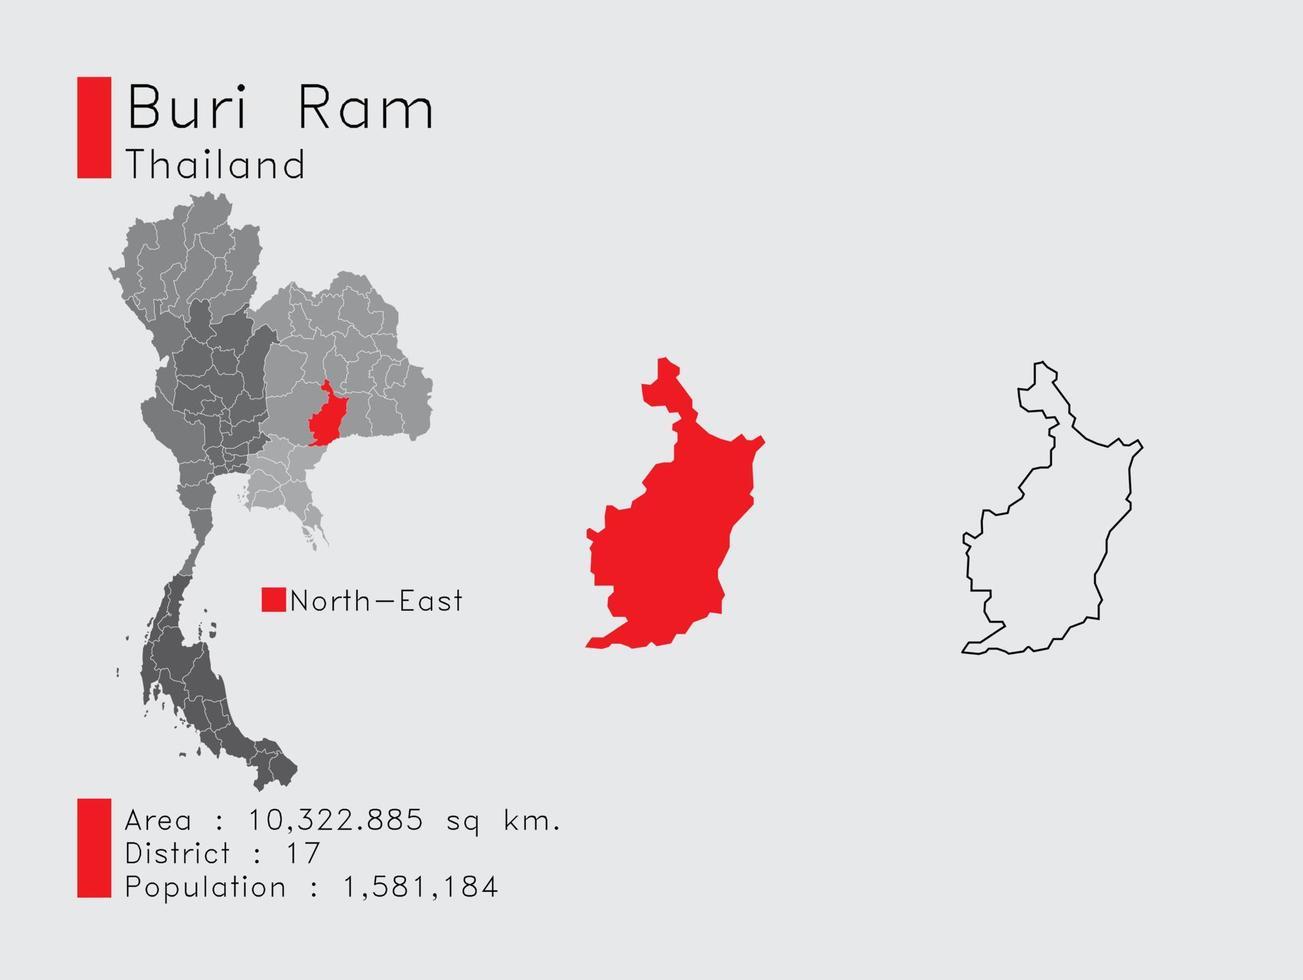 Buri Ram Position in Thailand eine Reihe von Infografik-Elementen für die Provinz. und Bereich Bezirk Bevölkerung und Gliederung. Vektor mit grauem Hintergrund.